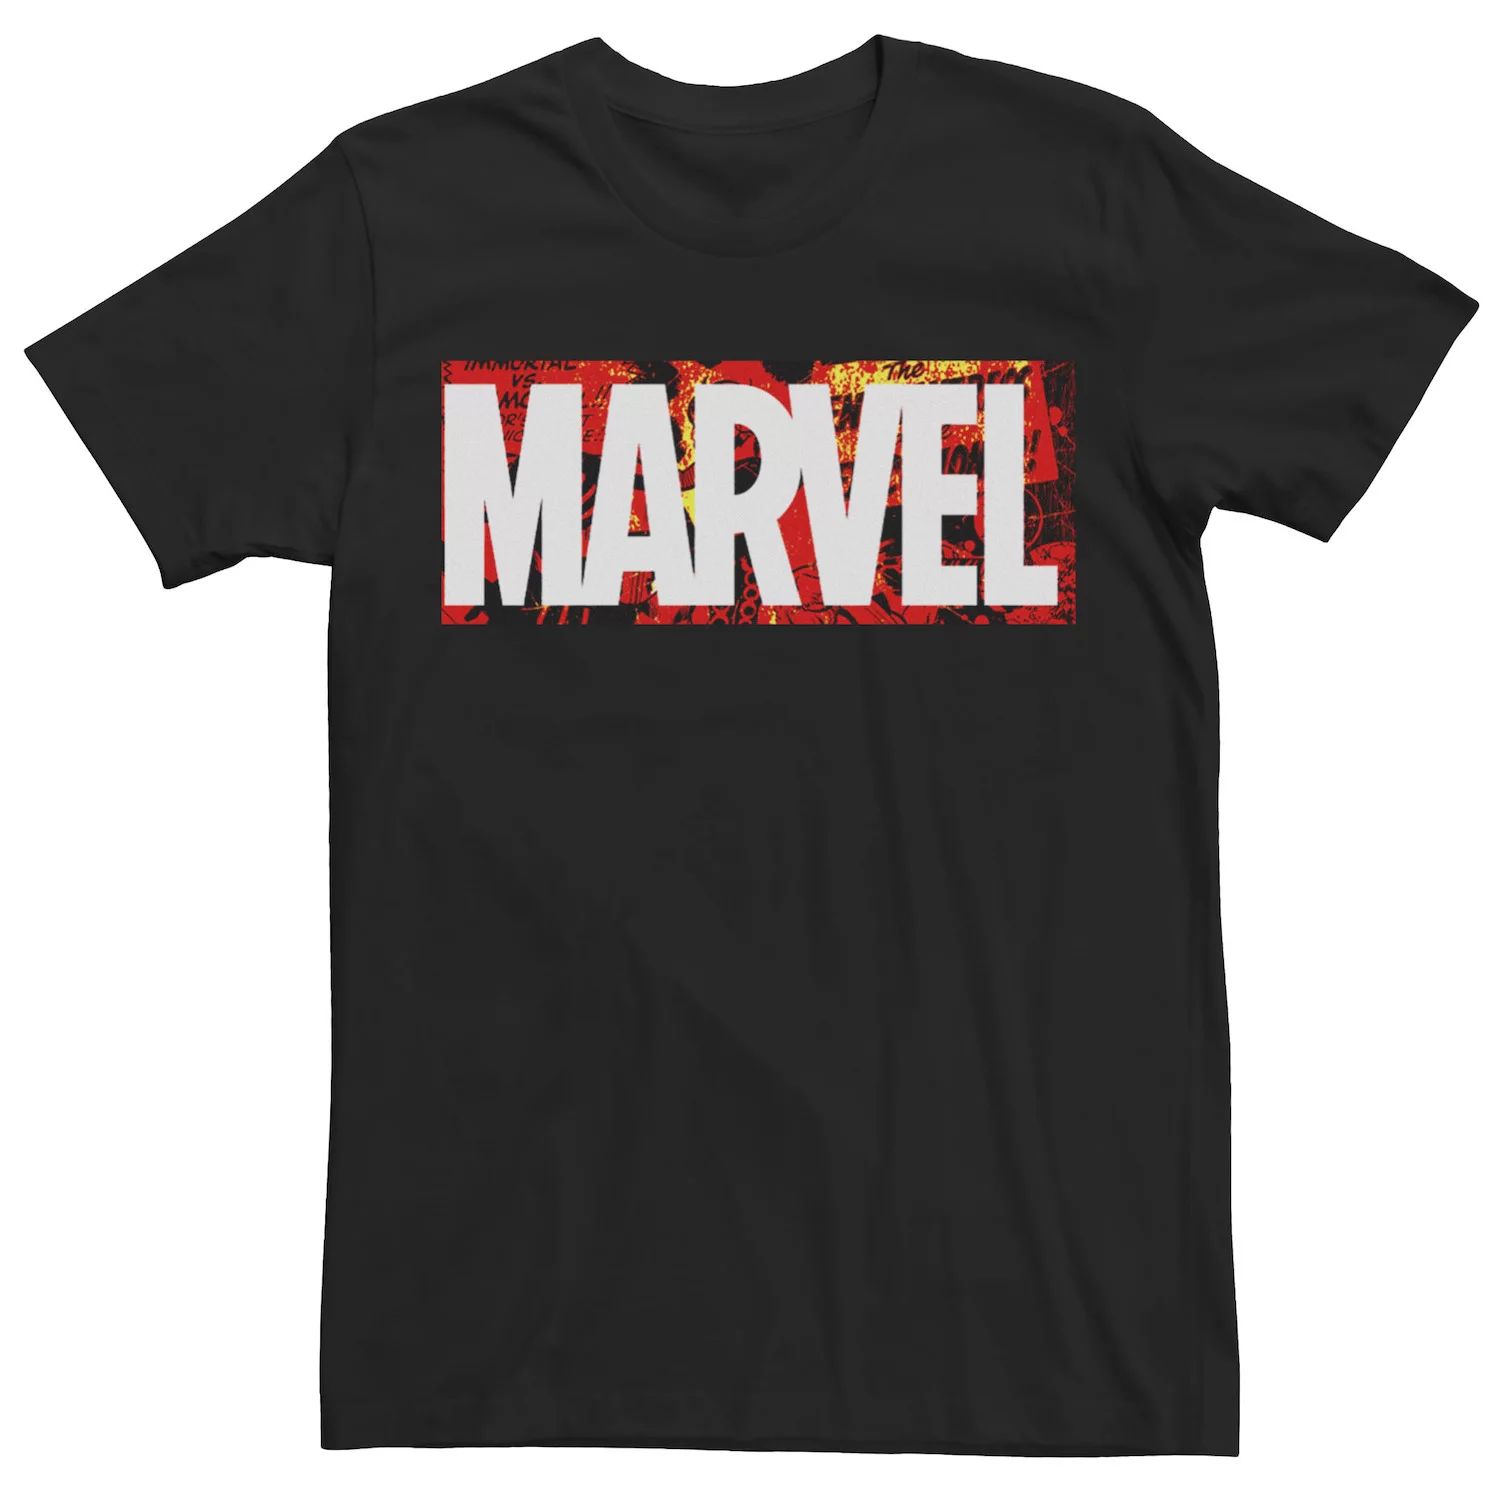 Мужская футболка с логотипом в стиле комиксов Marvel